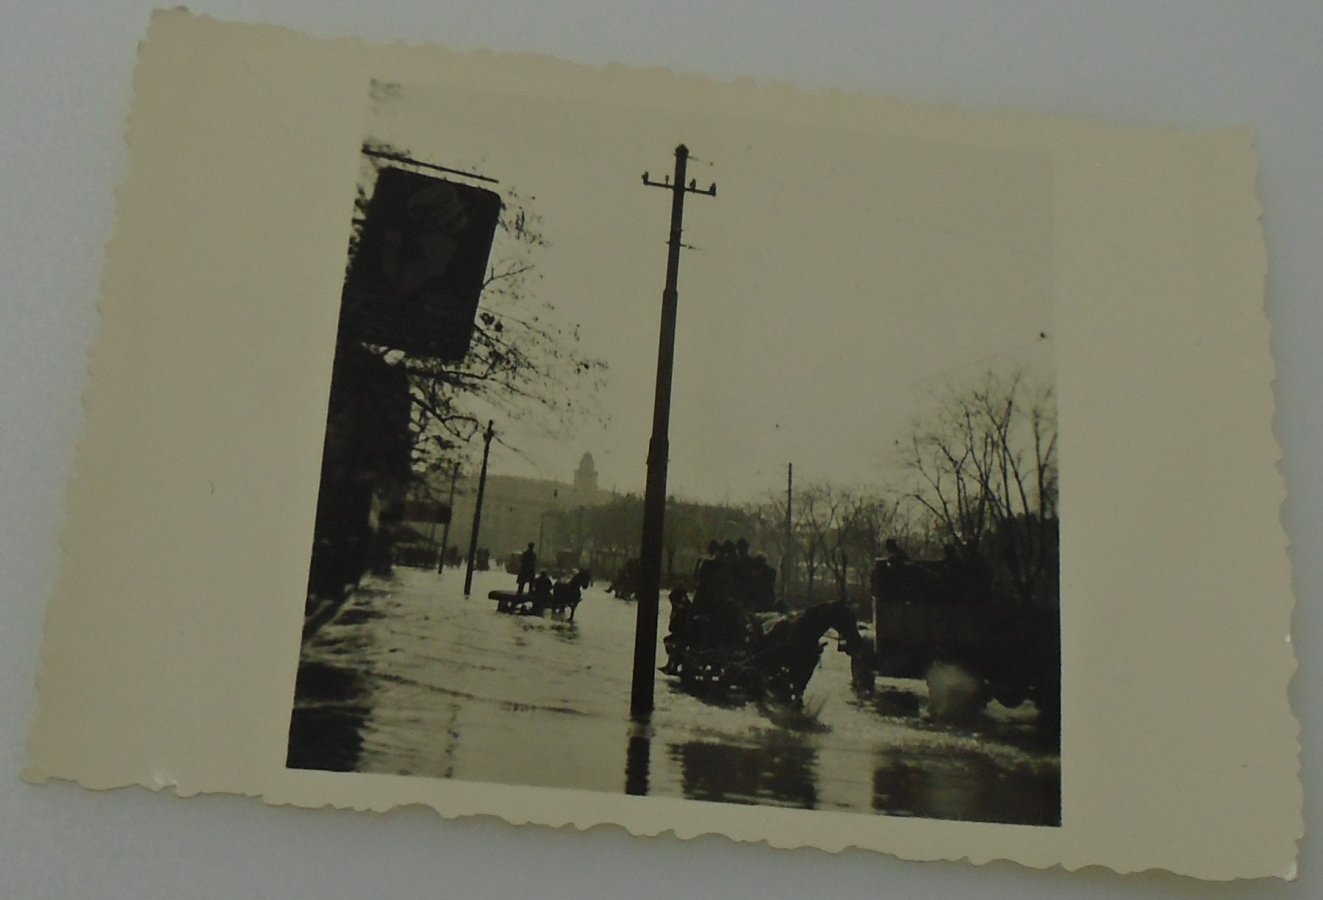 kraljevina-poplava-u-beogradu-tridesetih-godina_slika_O_327702045.jpg